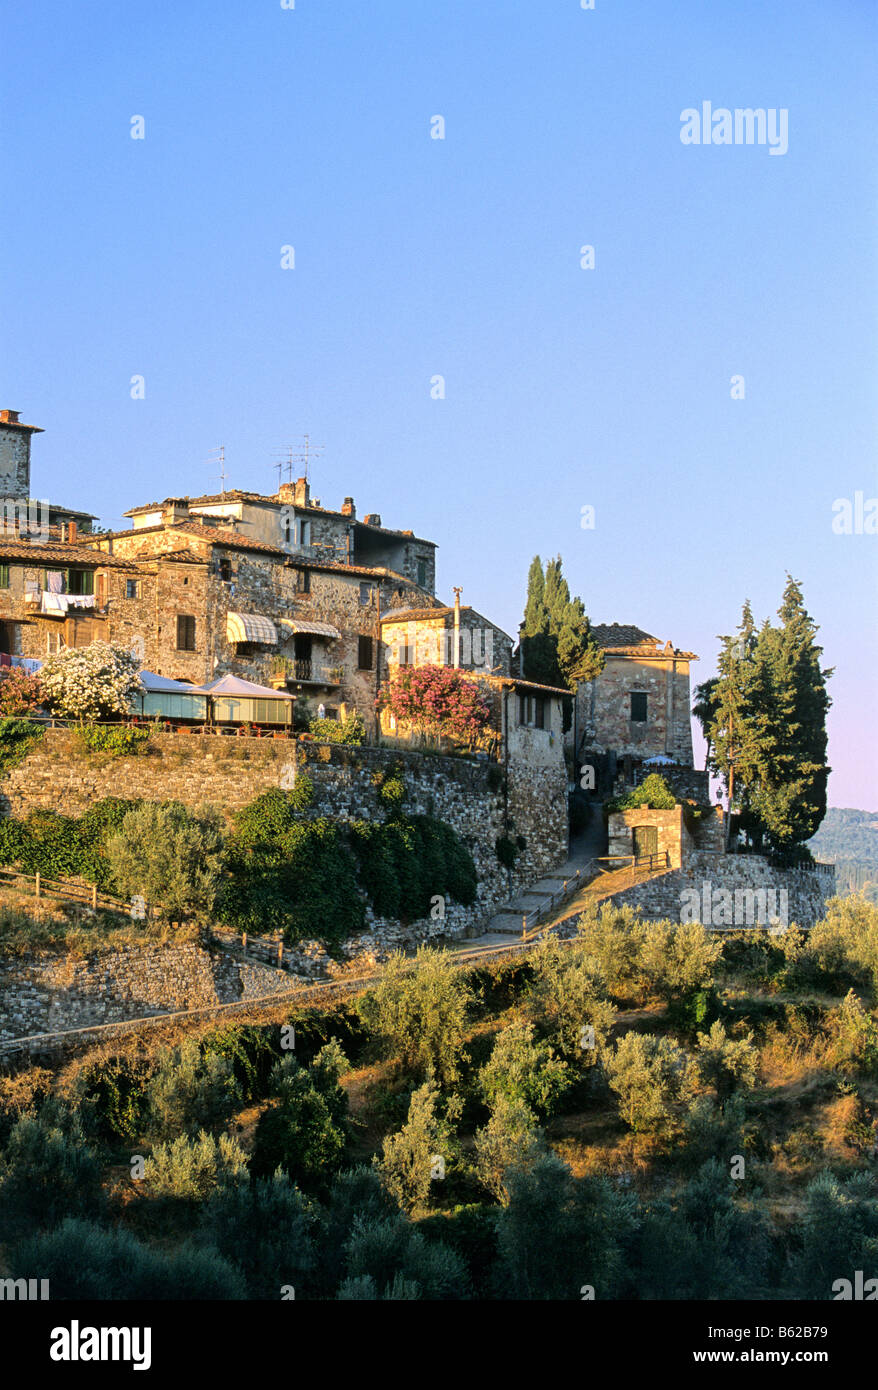 Il piccolo paese vinicolo di Montefioralle, Chianti, Firenze, Firenze, Toscana, Italia, Europa Foto Stock